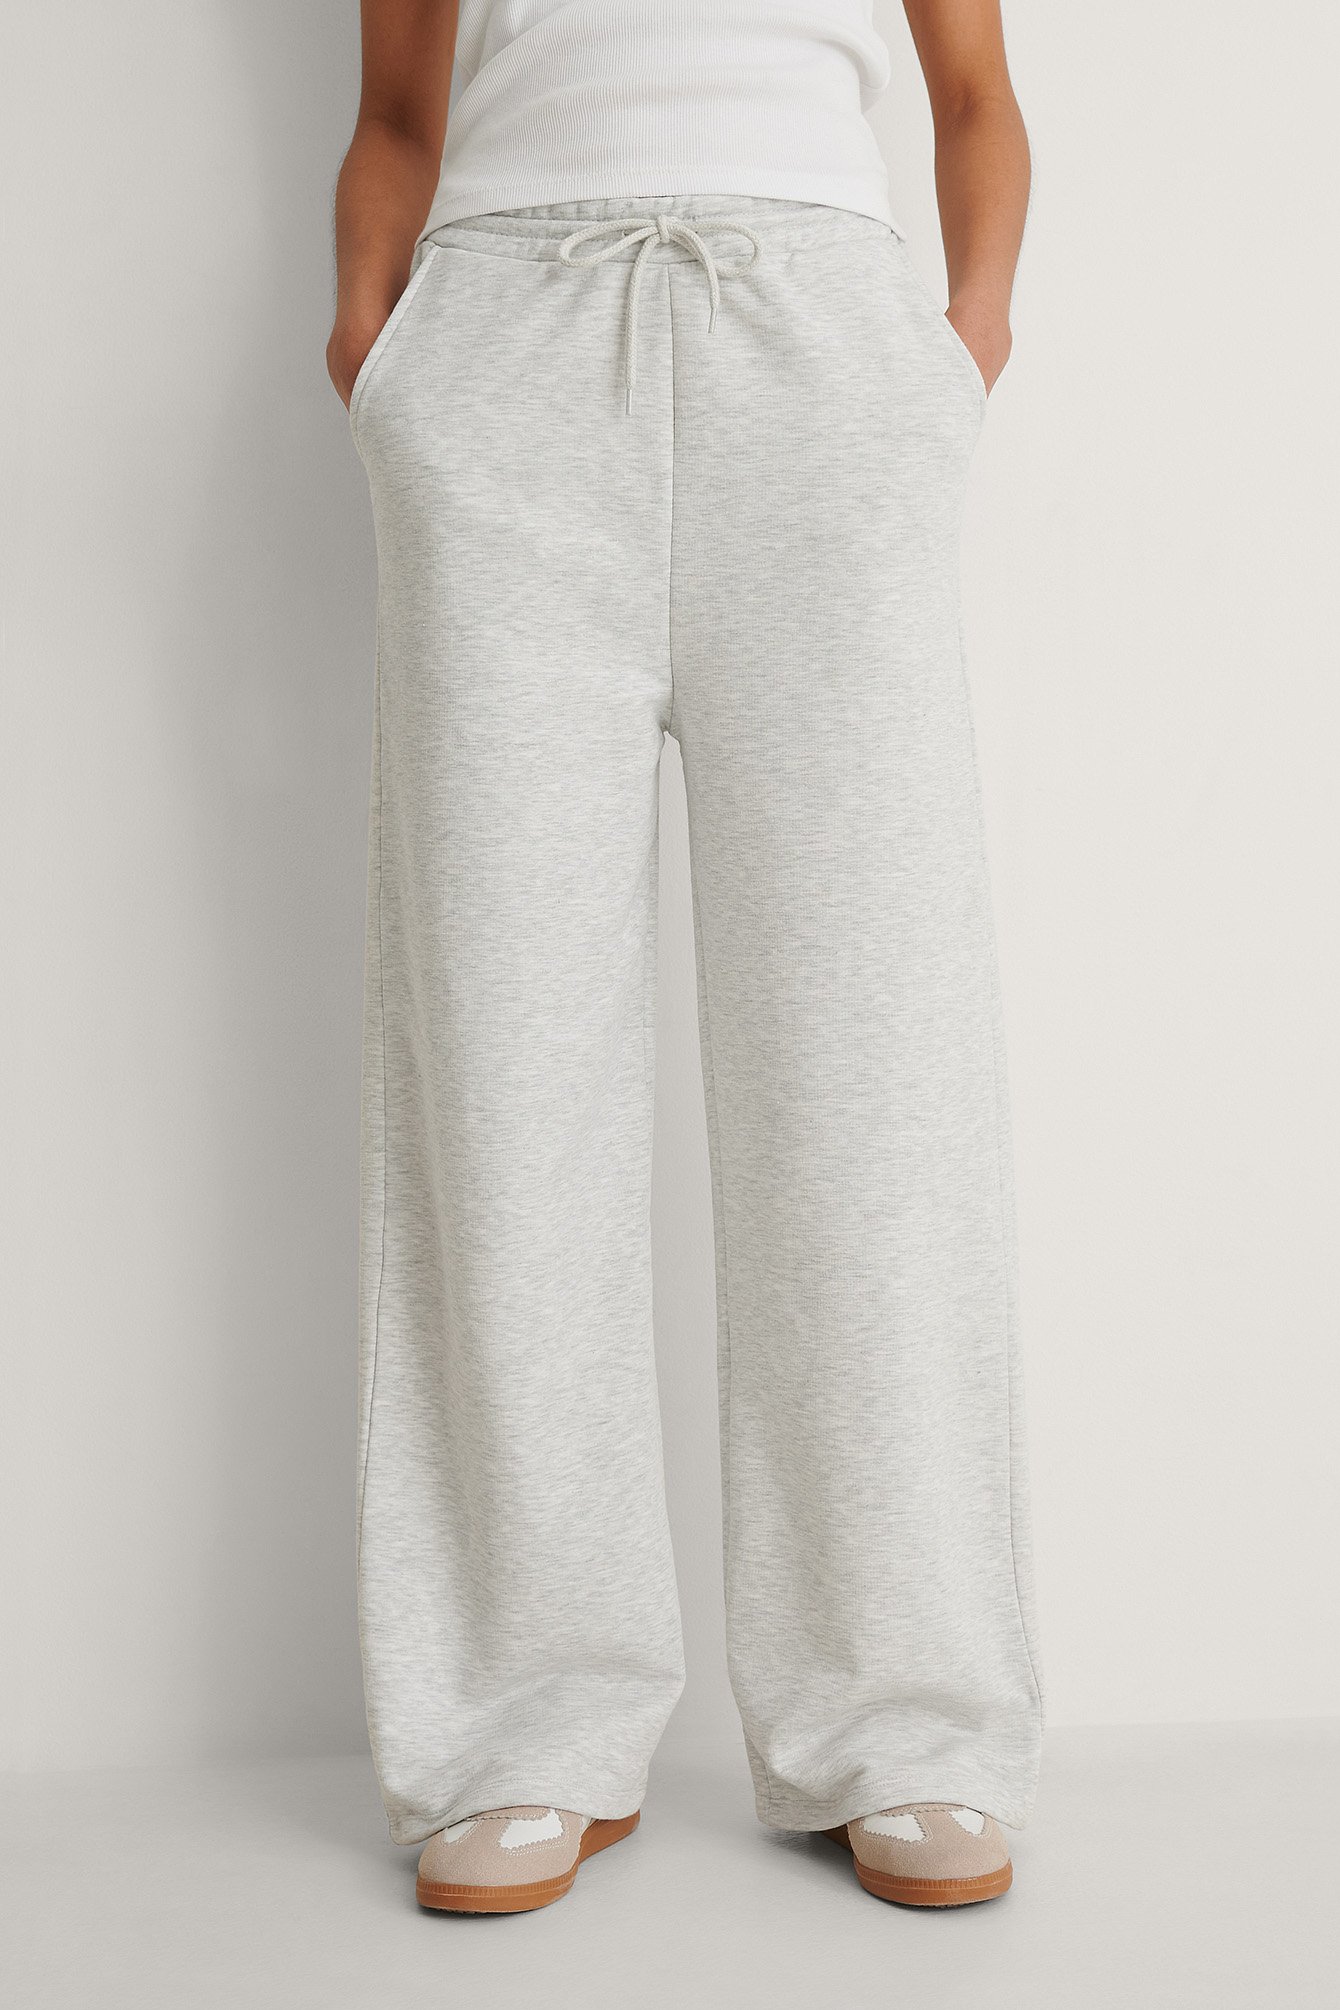 Grey Melange Pantalón de chándal recto orgánico